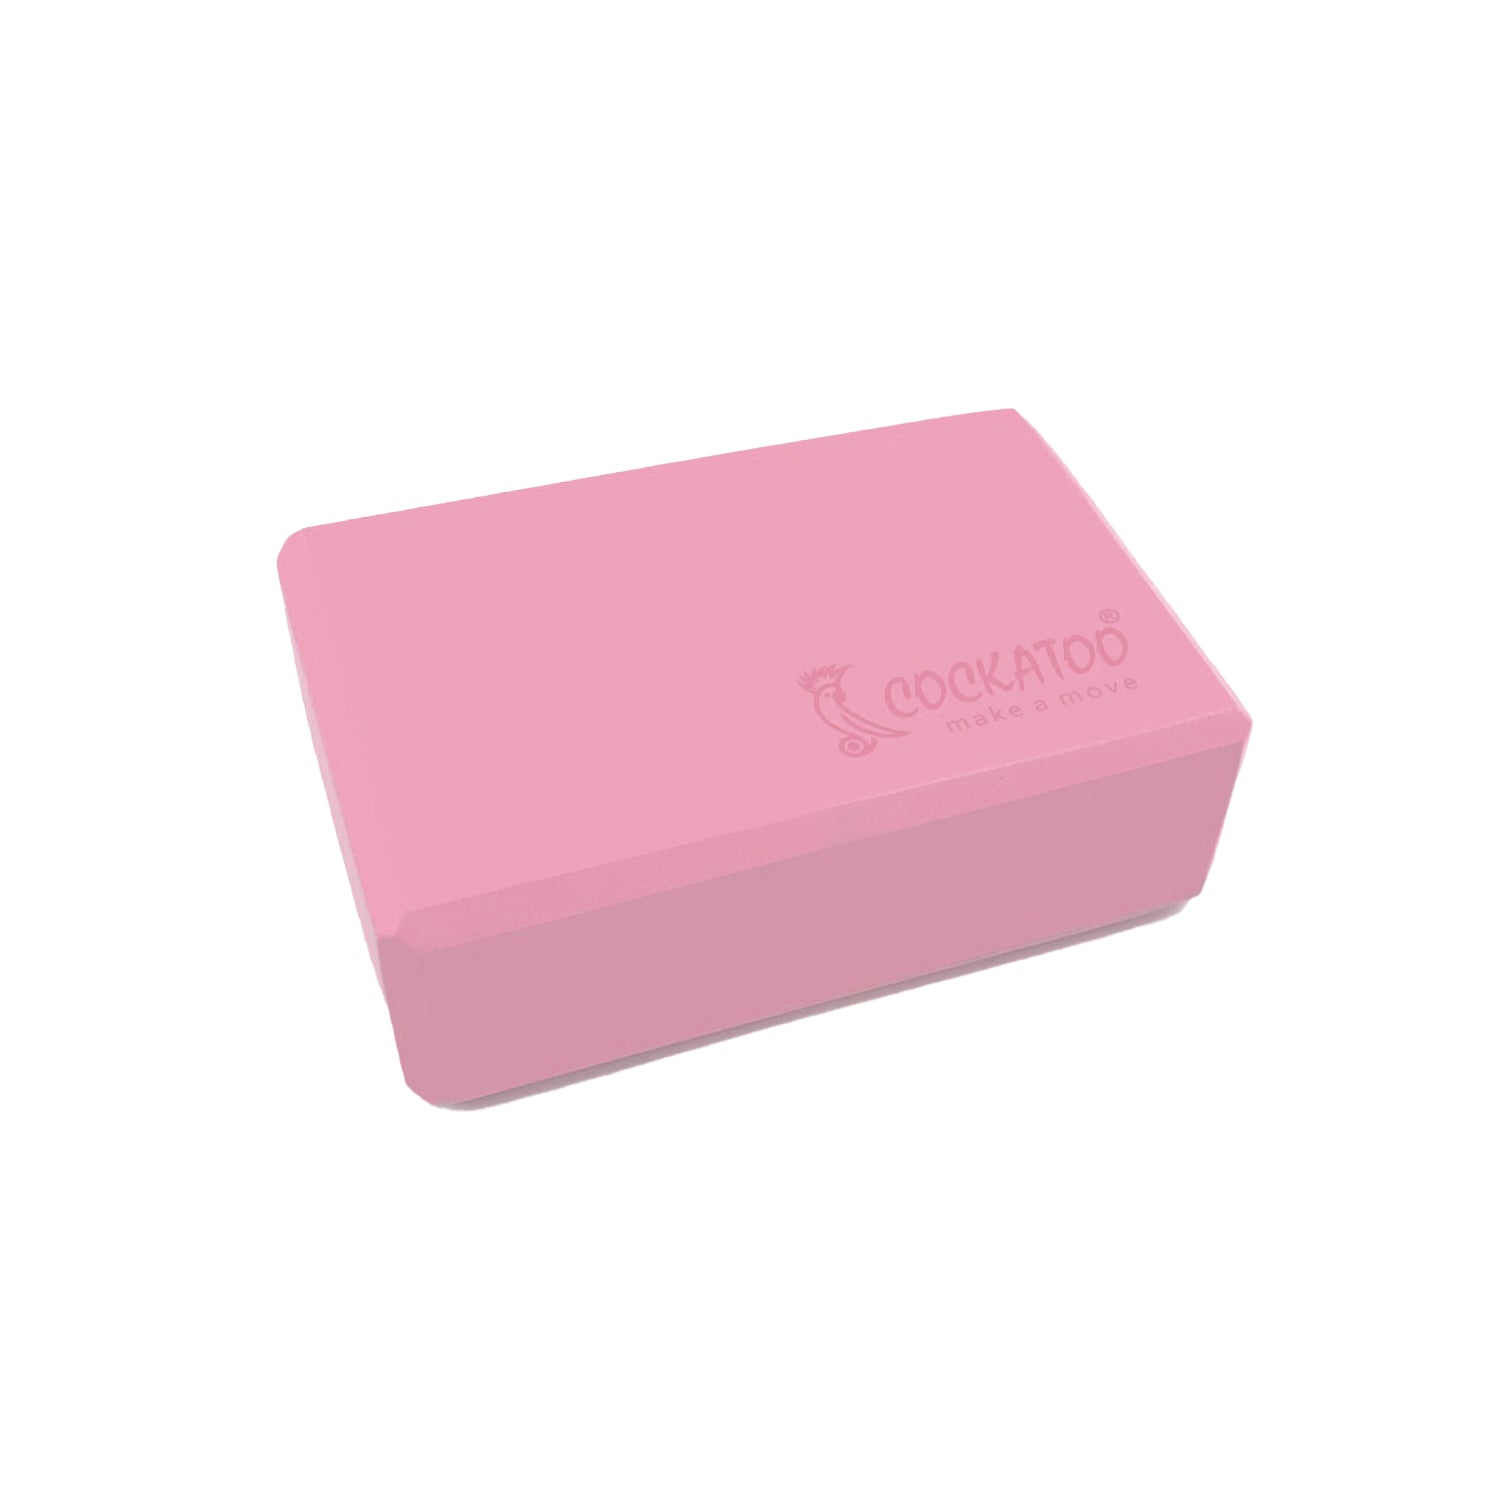 Cockatoo Yoga Block - Supportive Latex-Free EVA Foam Soft Non-Slip Sur